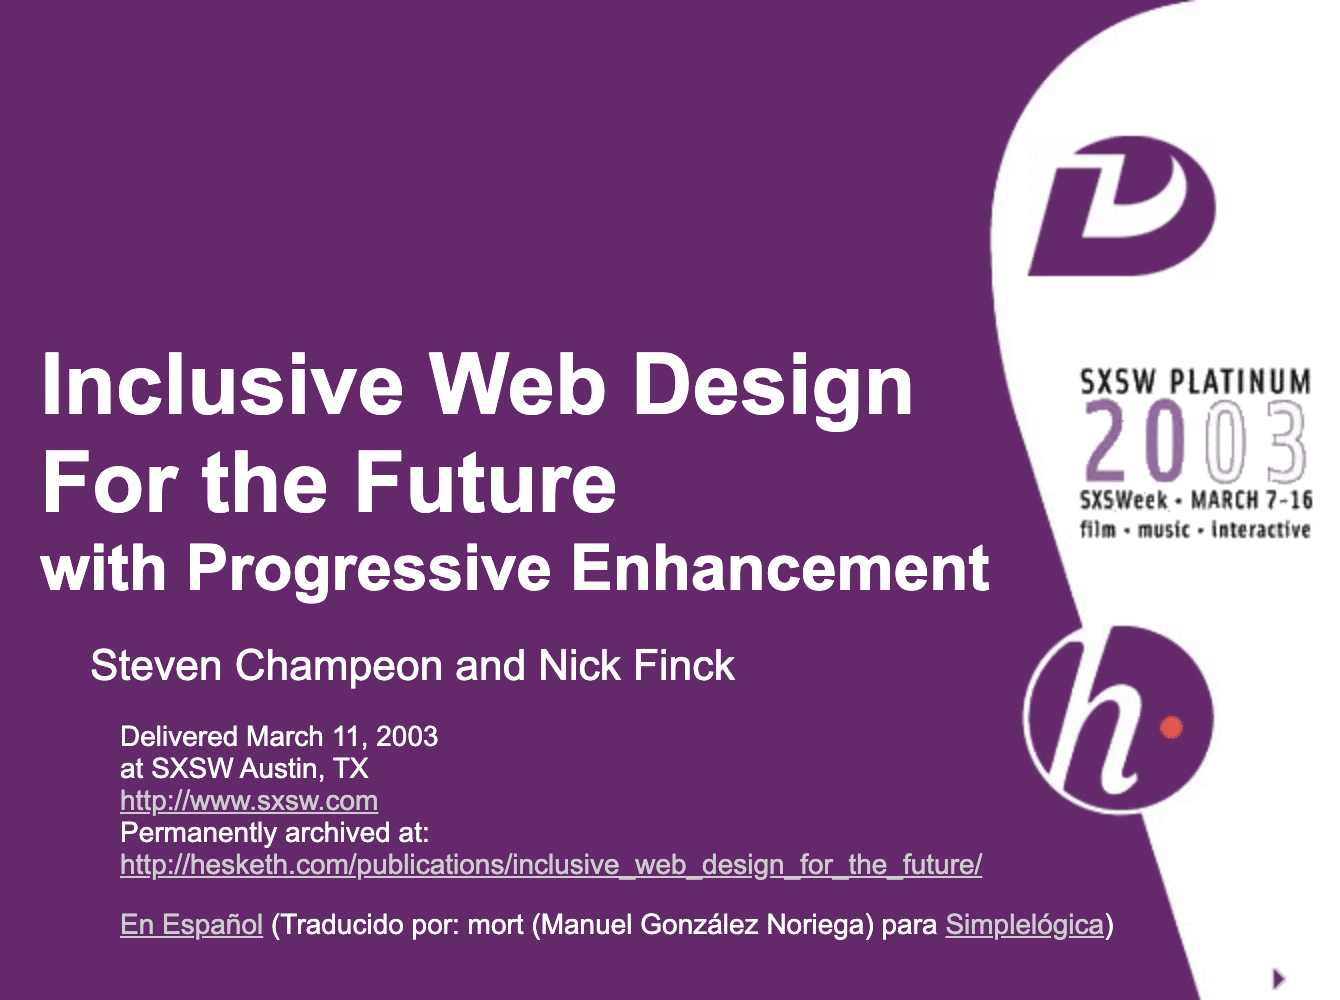 Inklusives Webdesign für die Zukunft mit Progressive Enhancement. Titelfolie aus der ursprünglichen Präsentation von Finck und Champeon.